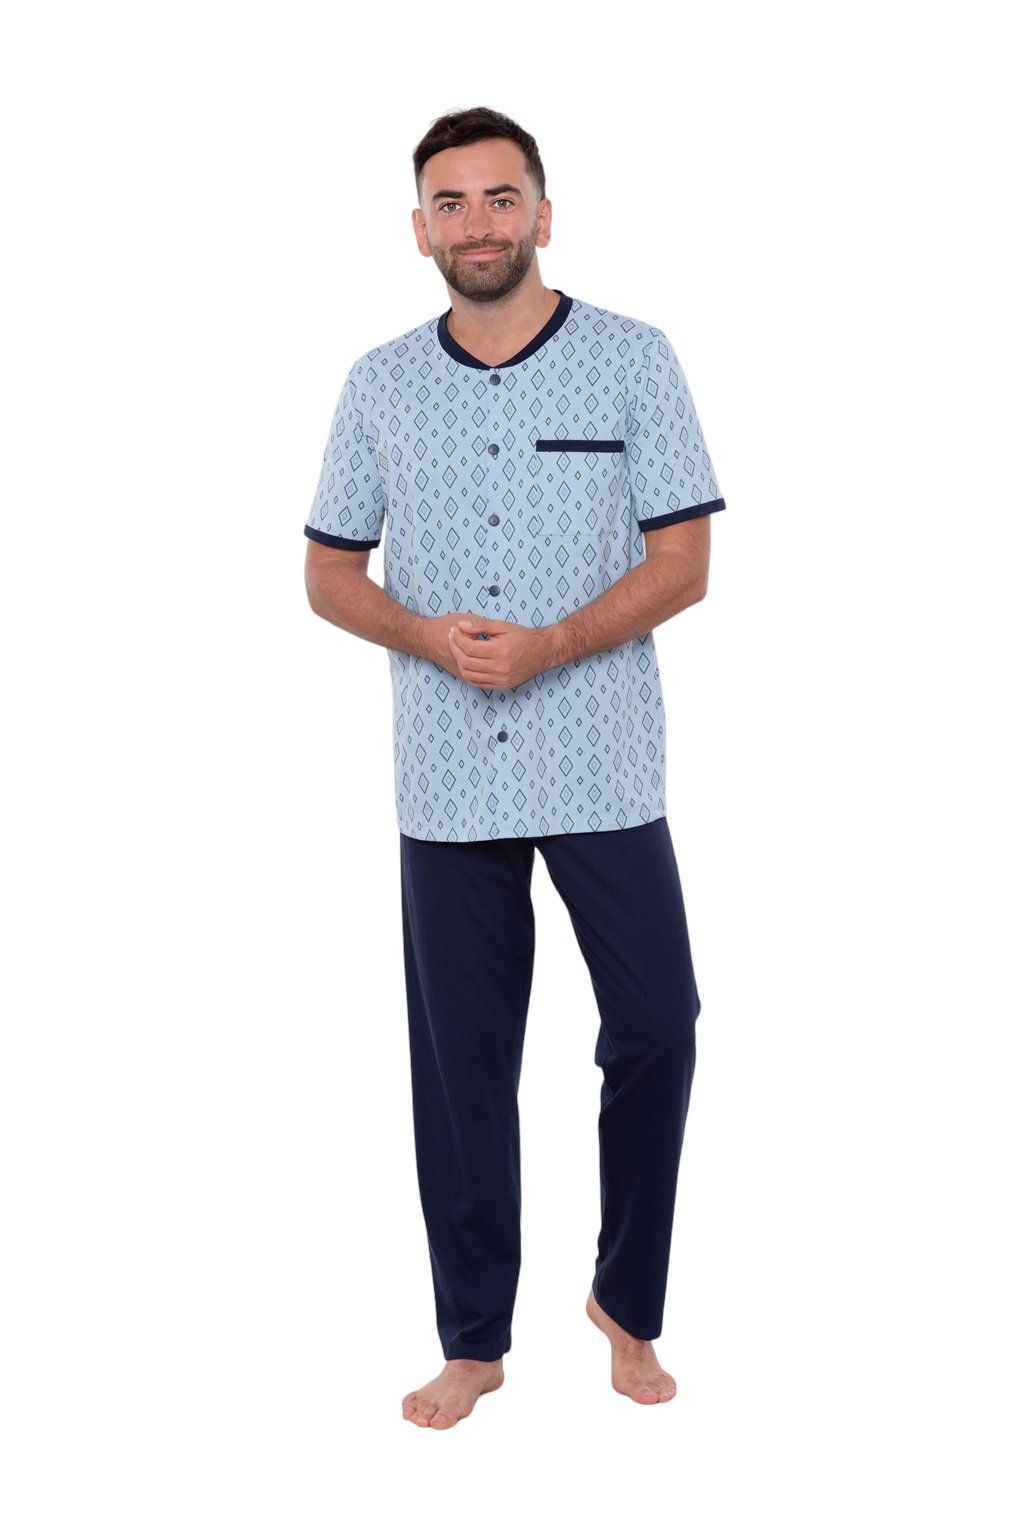 Pánské pyžamo s krátkým rukávem a dlouhými nohavicemi, 204122 477, modrá - Velikost XXL Wadima